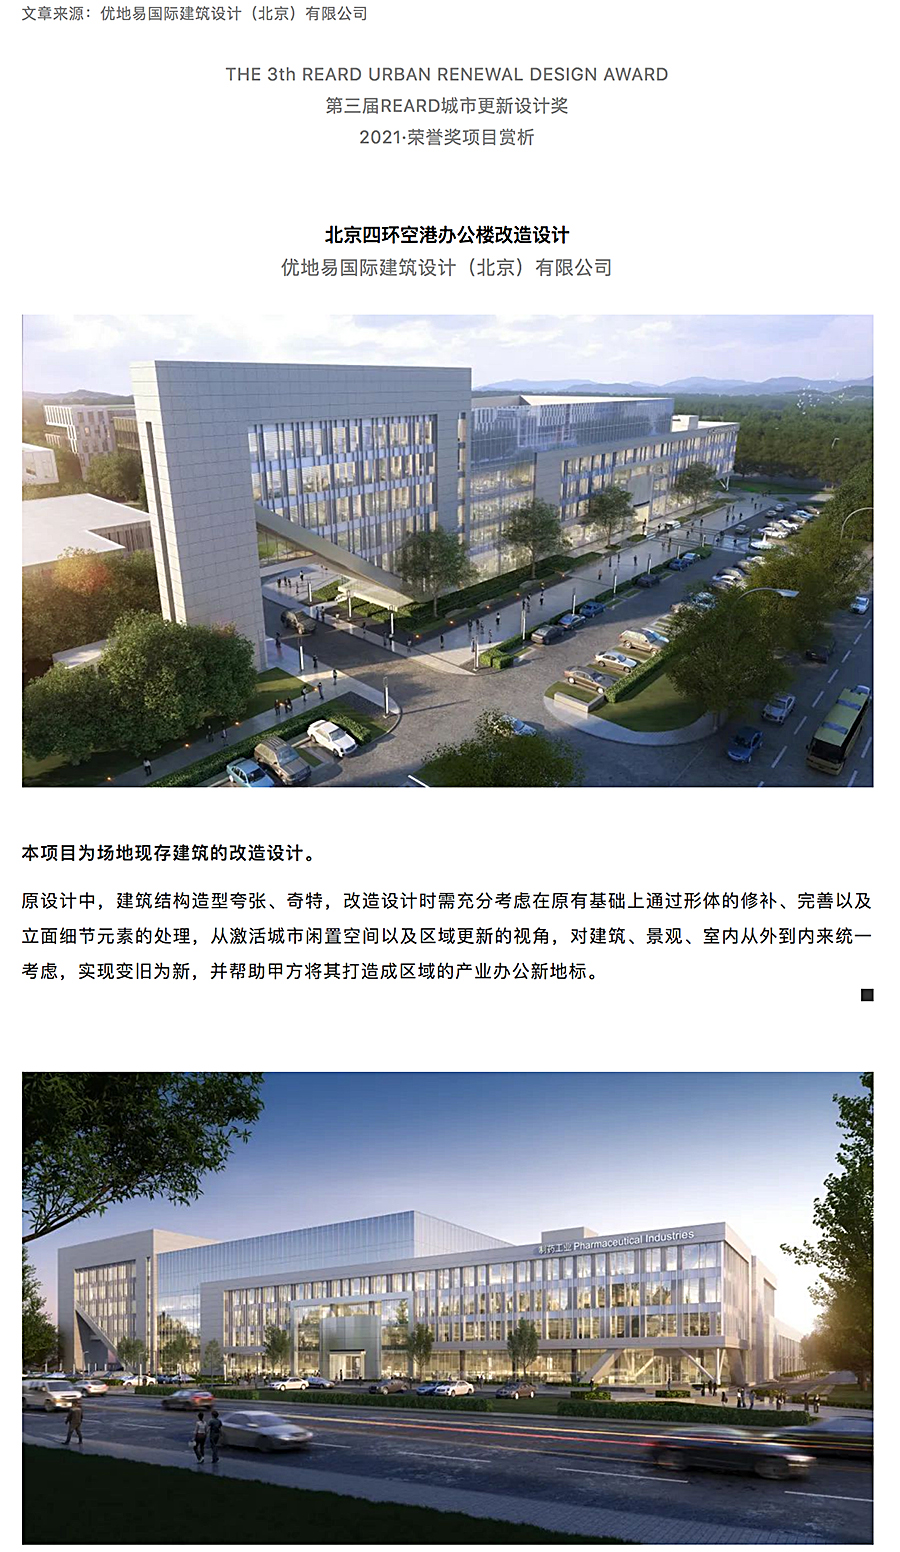 北京四环空港办公楼改造设计_0000_图层-1.jpg